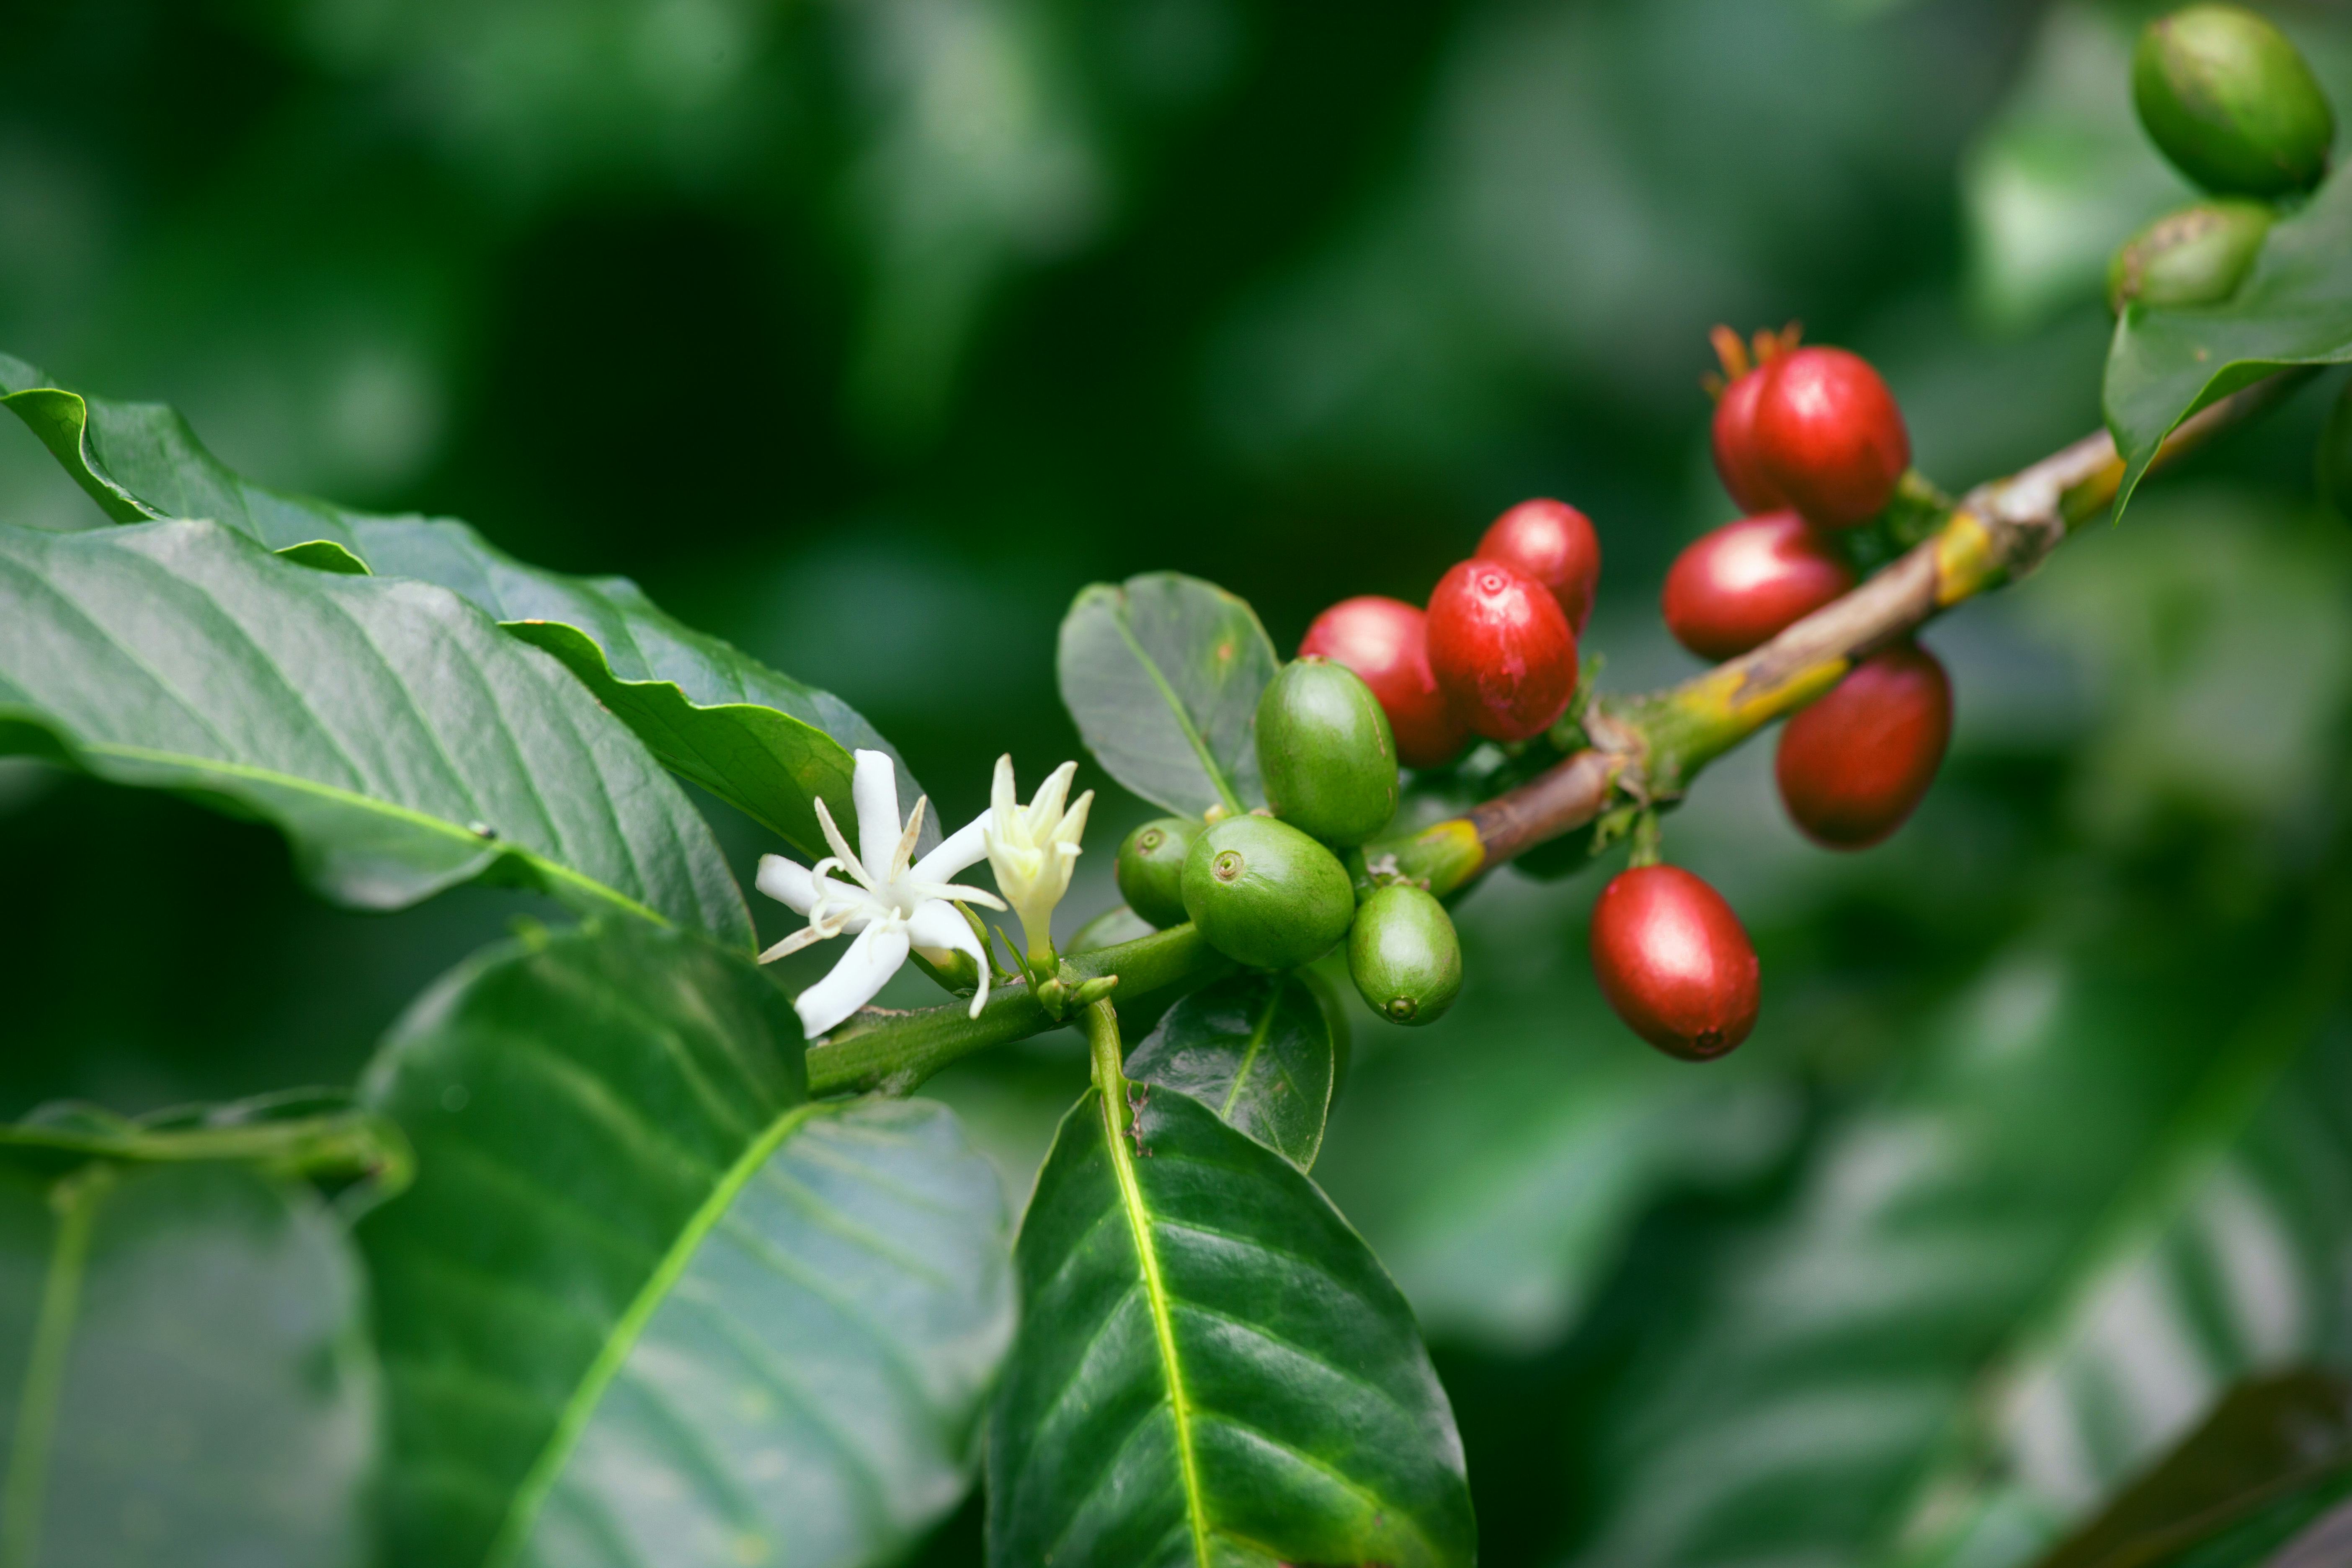 Veelzijdigheid van de koffieplant: Bloemen, bladeren,  bessen, bonen, alles is te drinken